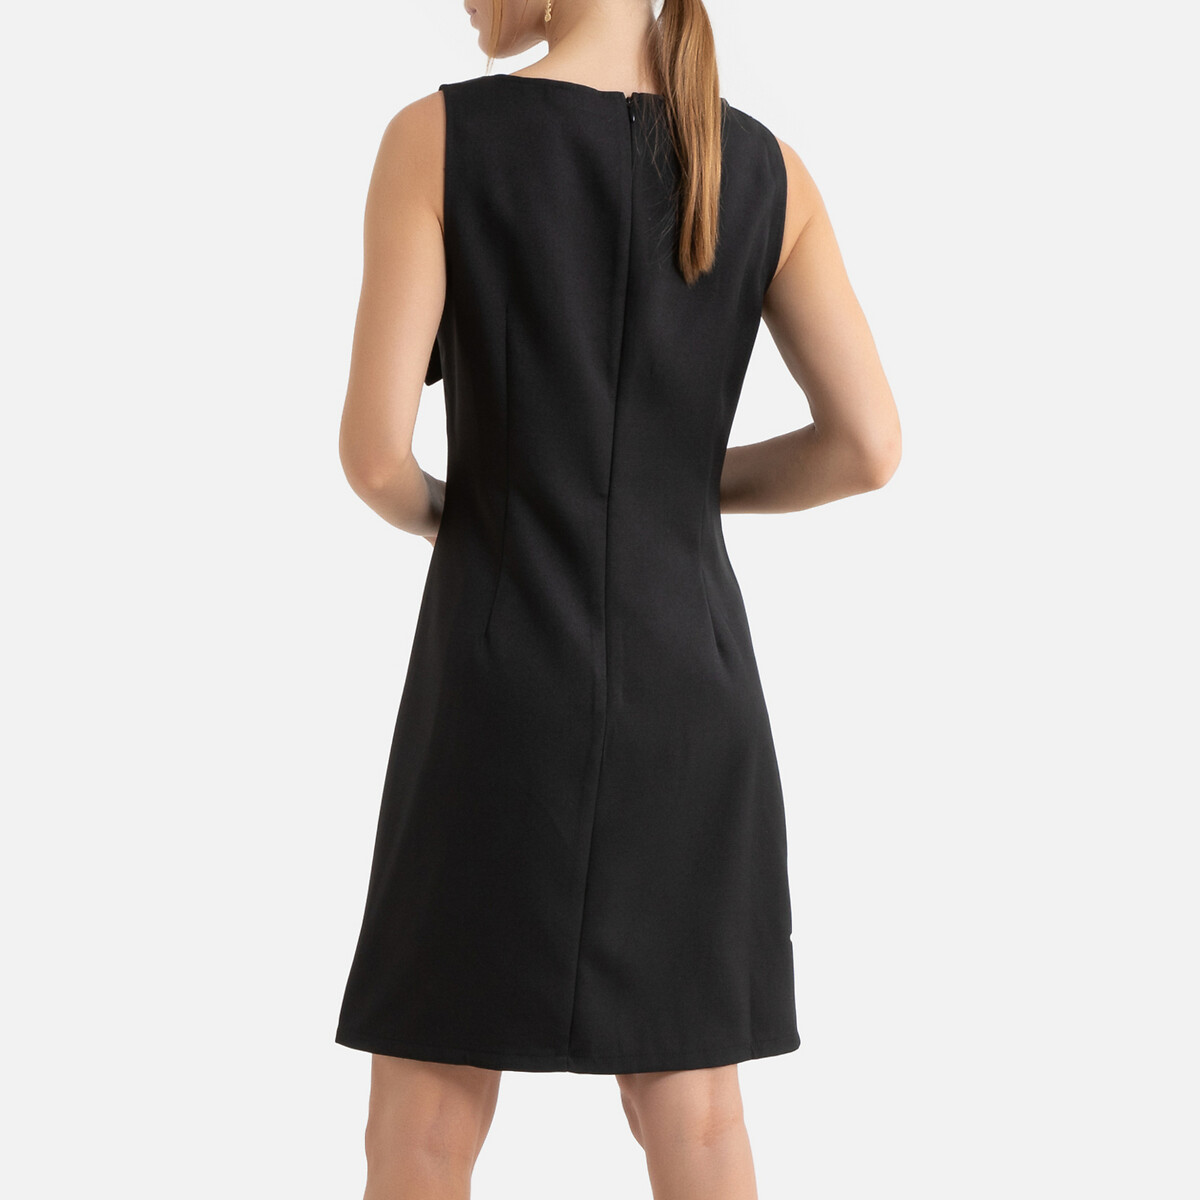 Платье La Redoute Короткое расклешенное бантик спереди XS черный, размер XS - фото 4